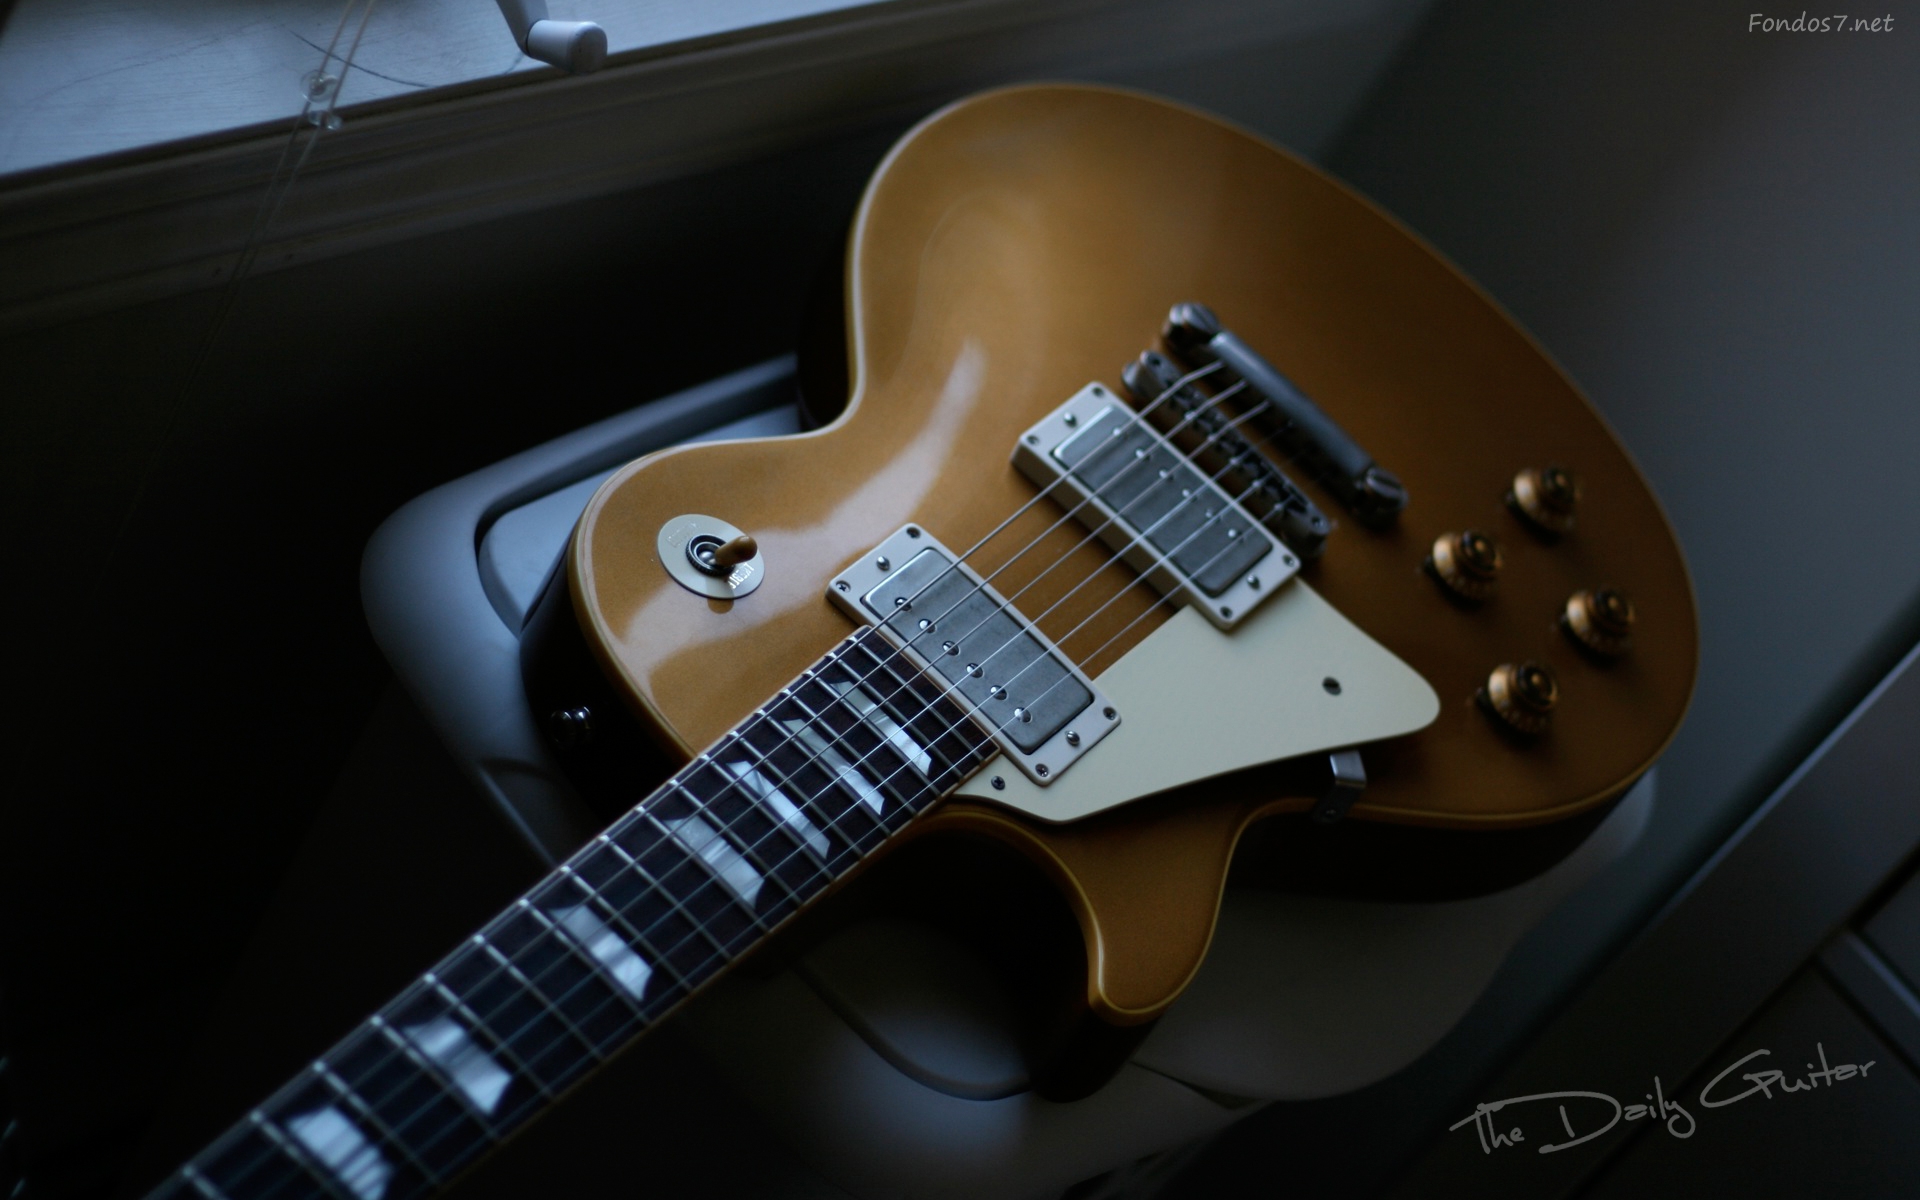 Descargar Fondos De Pantalla Modelo Gibson Les Paul HD Widescreen